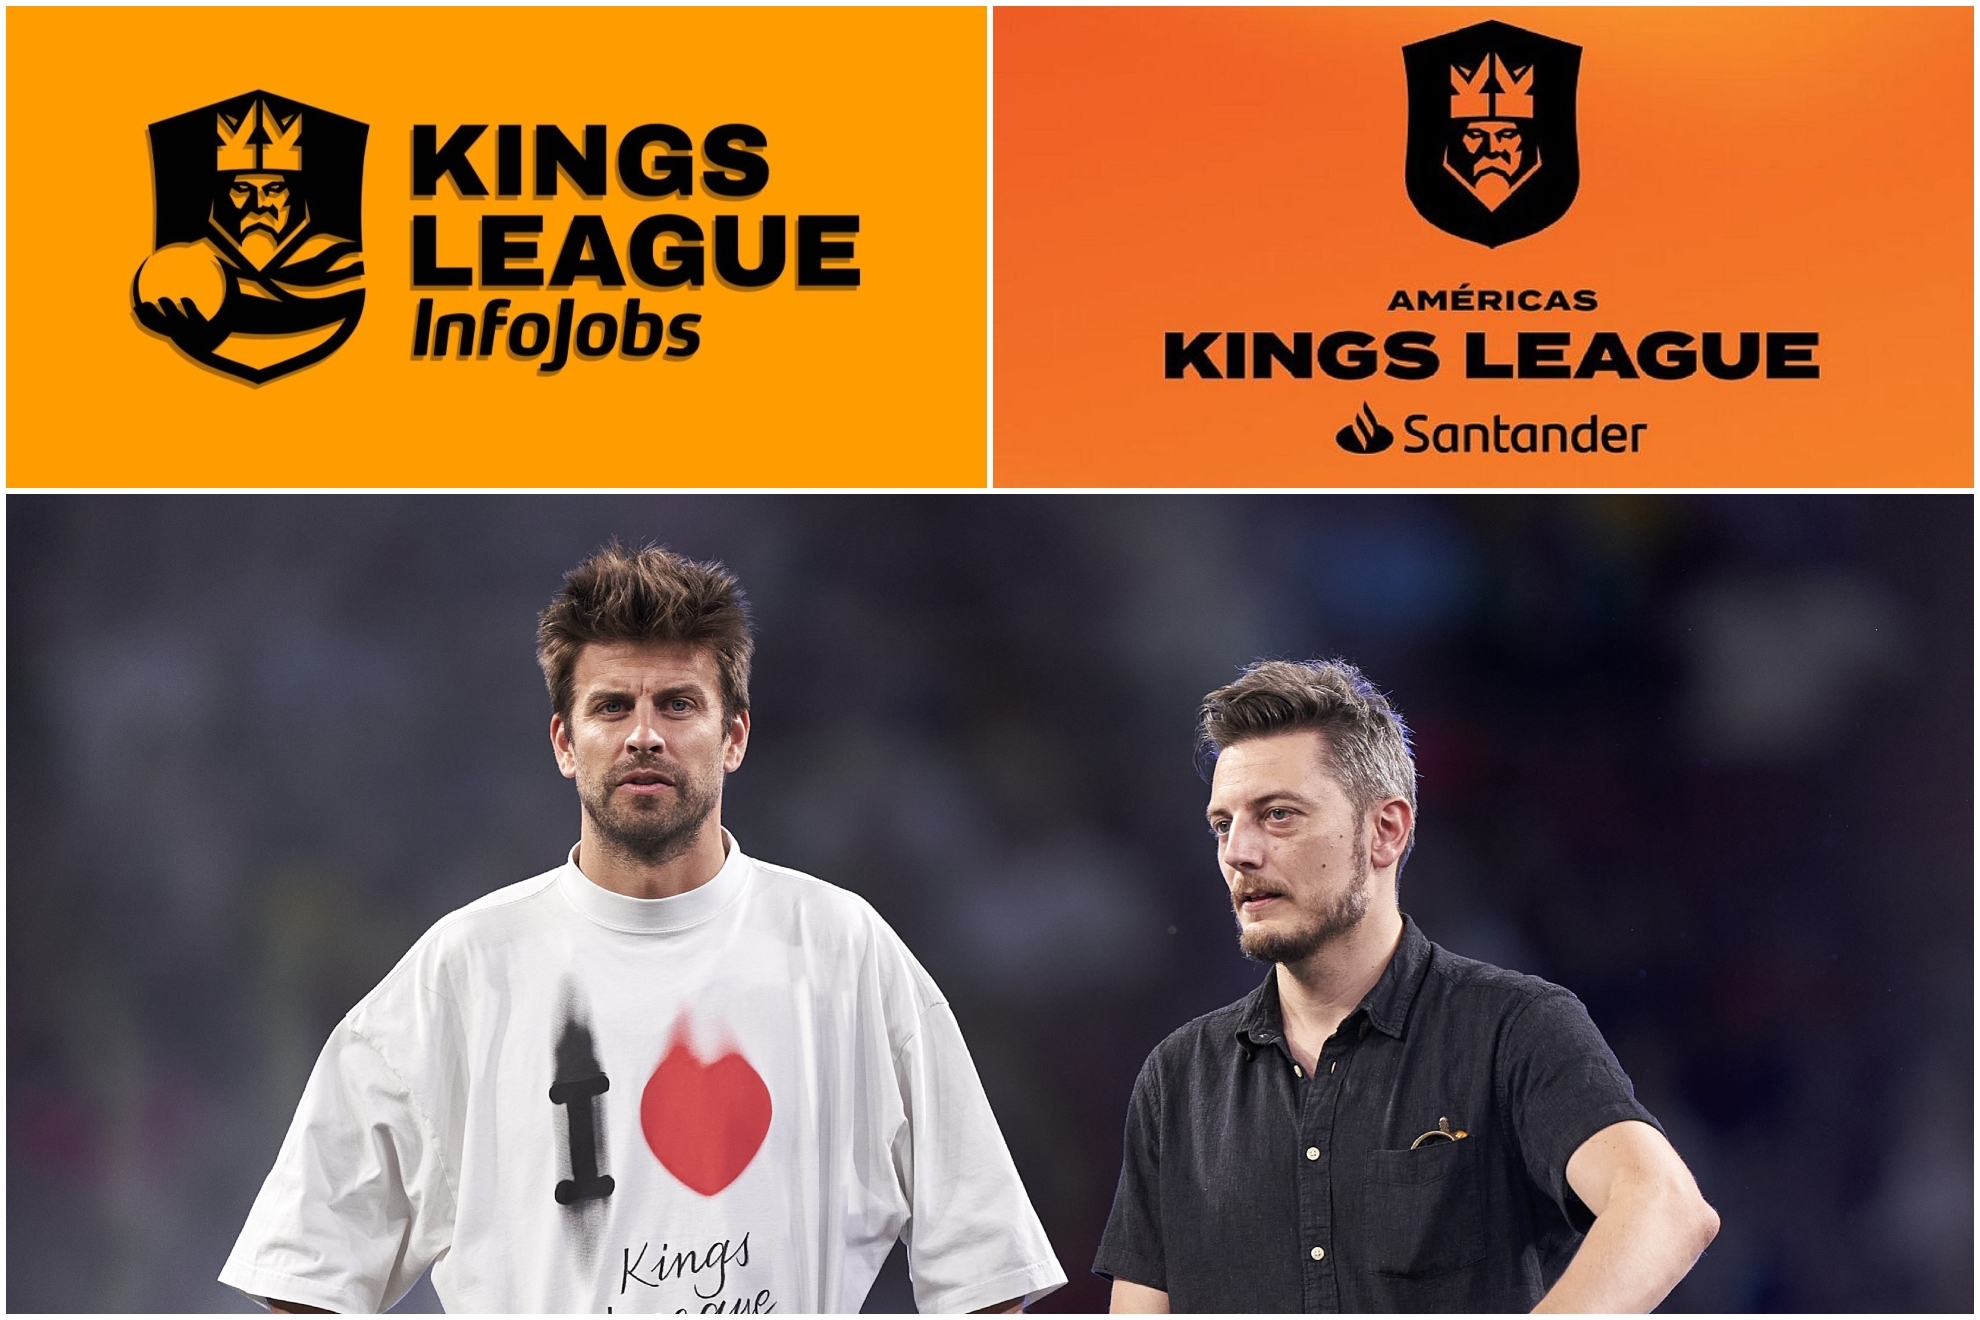 La nueva cuenta en inglés de la Kings League...¿Señal de una nueva liga de Gerard Piqué?